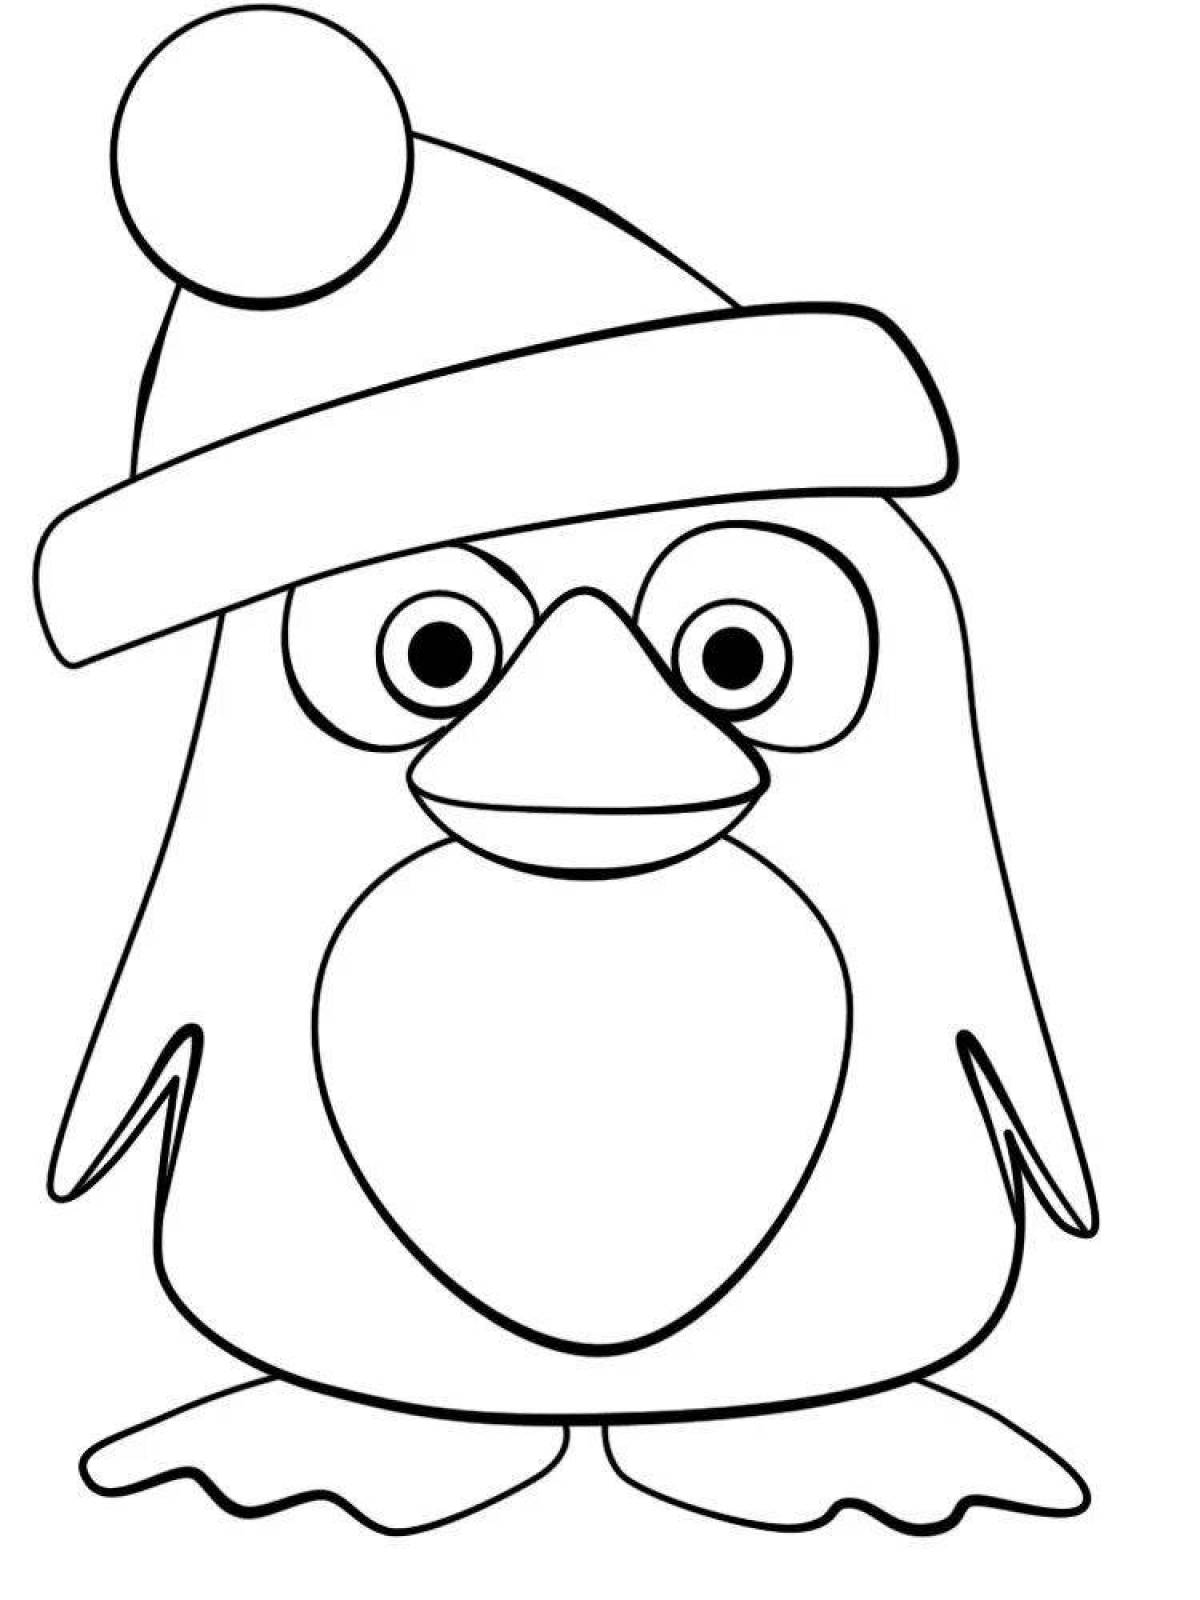 Joyful penguin drawing